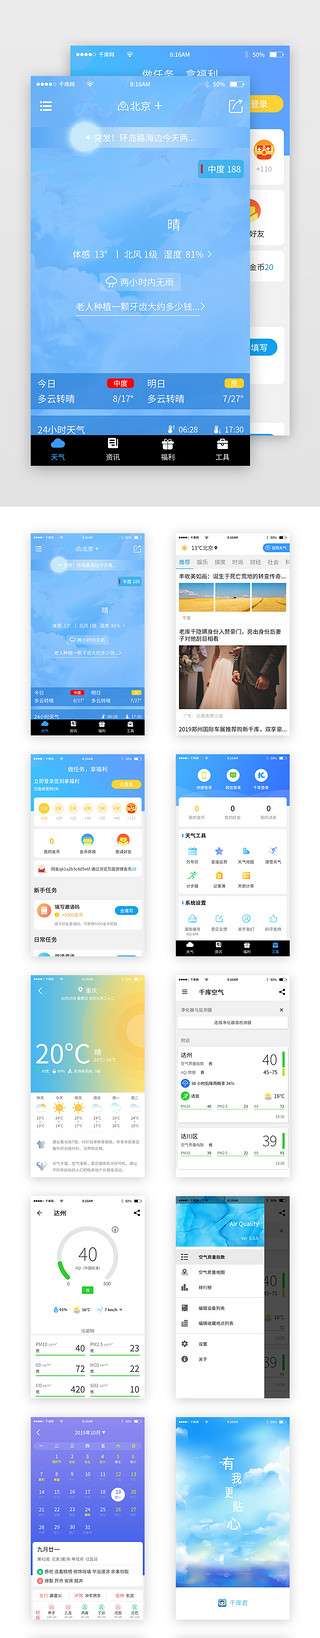 空气清新器UI设计素材_蓝色简约天气预报app套图